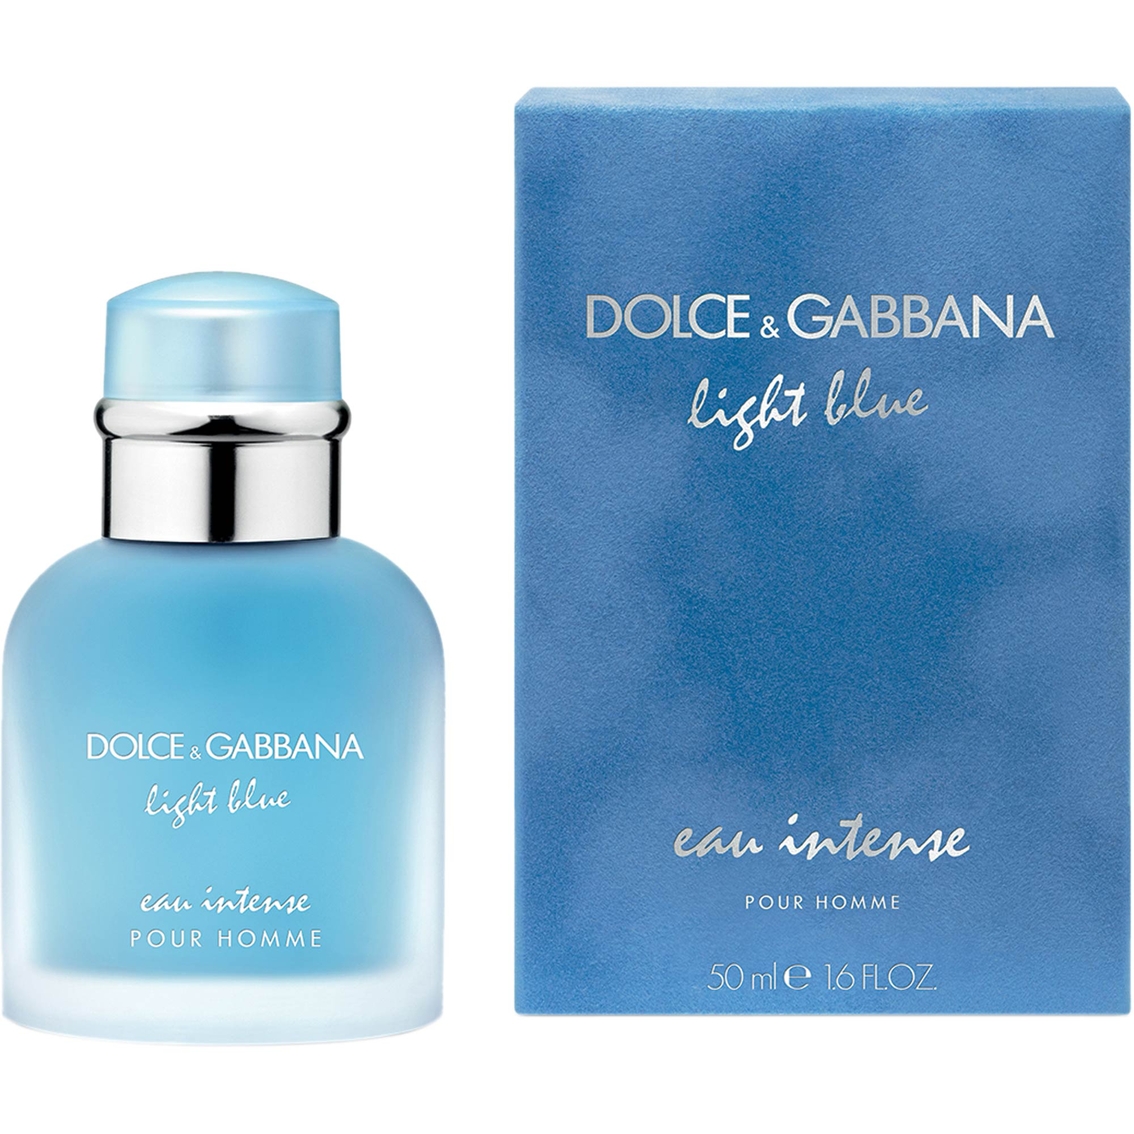 DOLCE & GABBANA LIGHT BLUE EAU INTENSE POUR HOMME